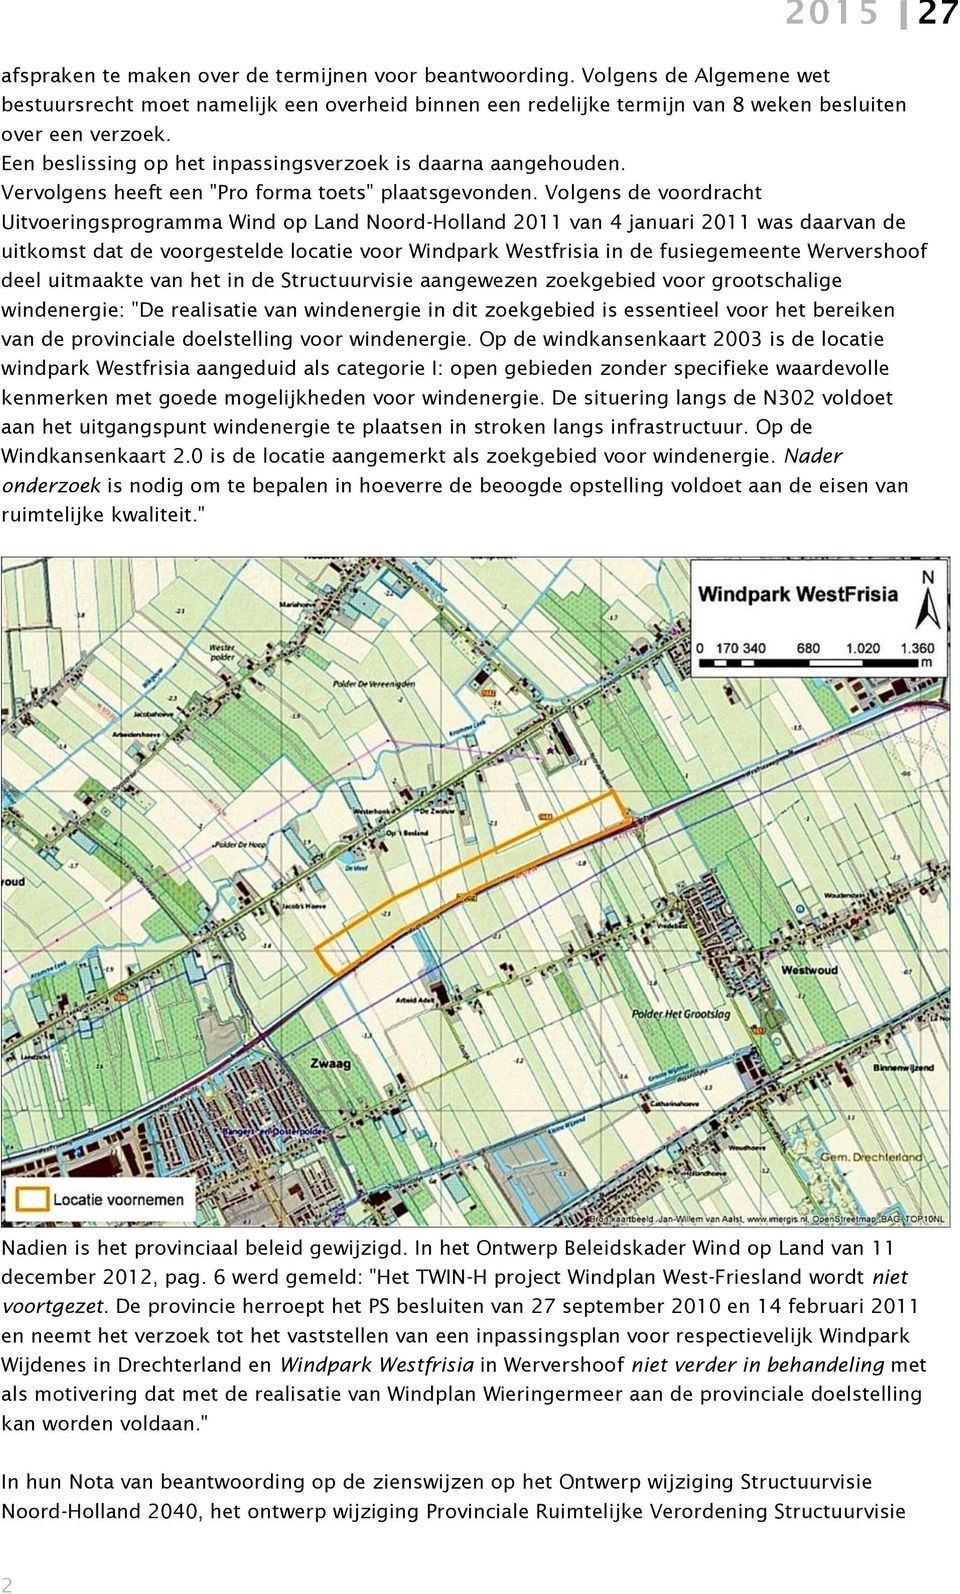 Volgens de voordracht Uitvoeringsprogramma Wind op Land Noord-Holland 2011 van 4 januari 2011 was daarvan de uitkomst dat de voorgestelde locatie voor Windpark Westfrisia in de fusiegemeente